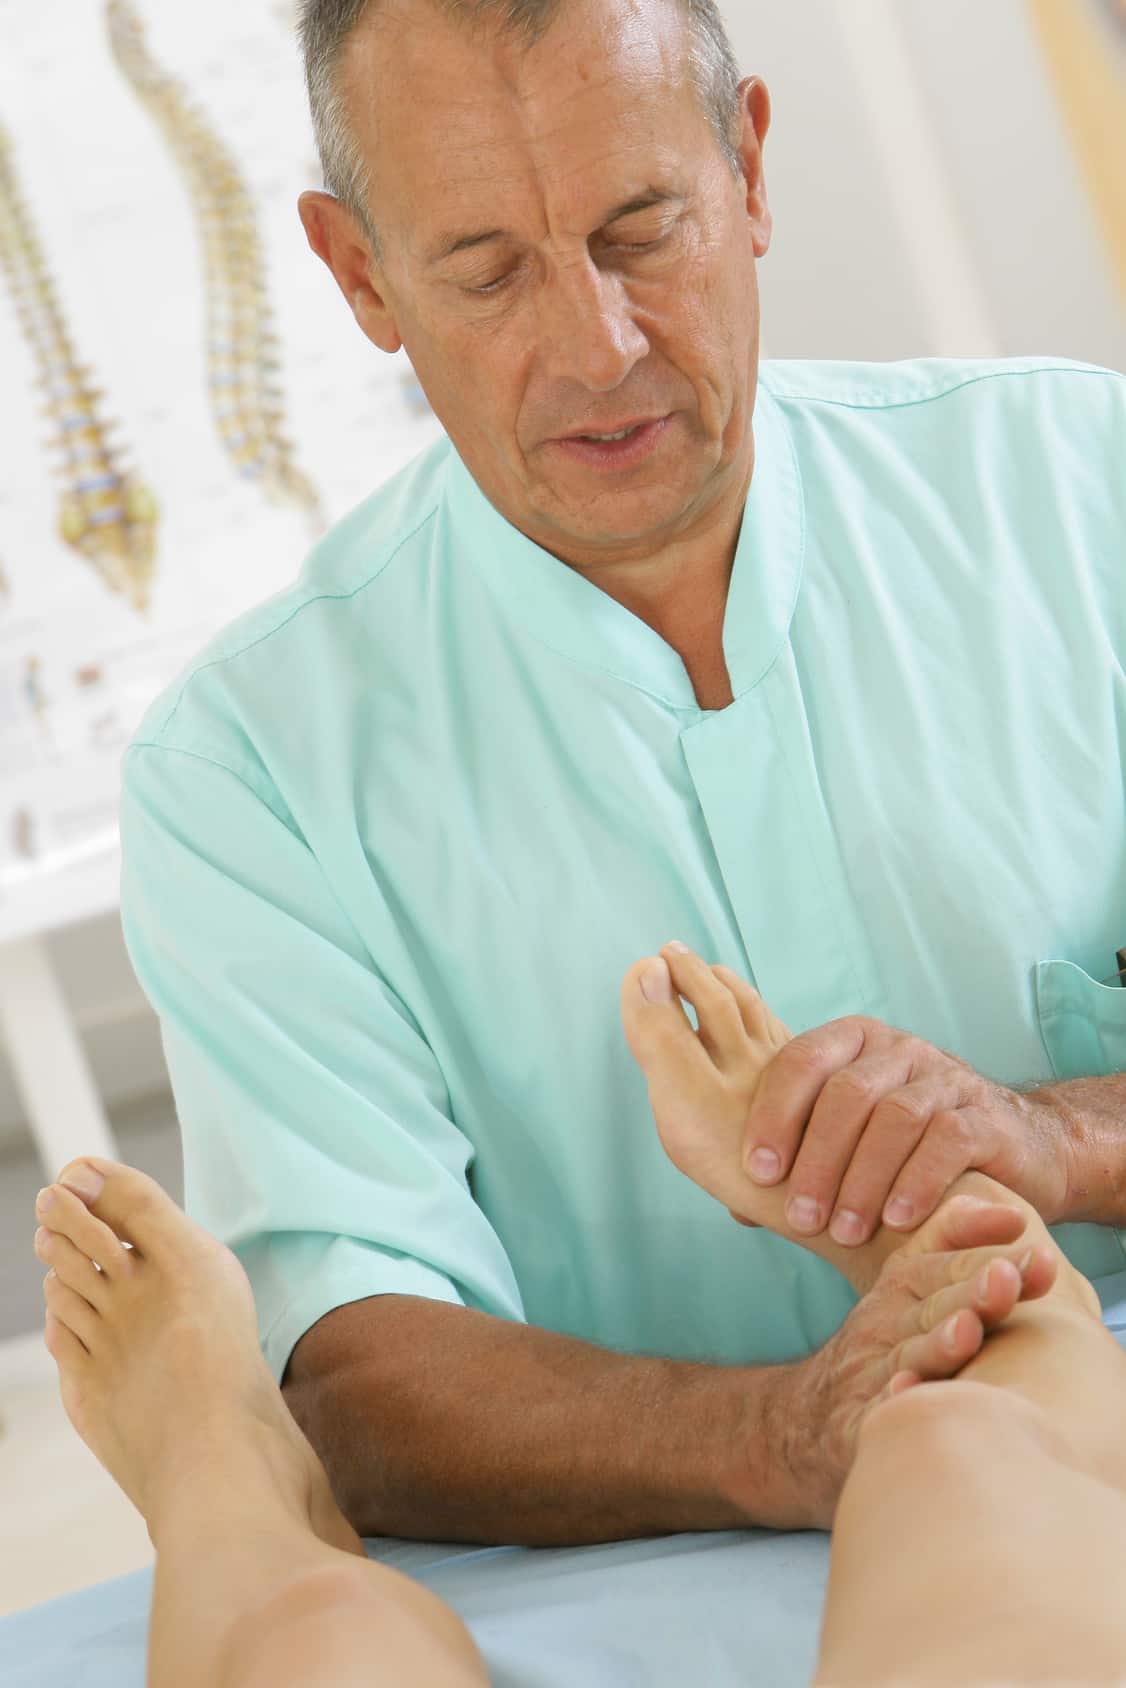 Mand undersøger fodsmerter ud fra sit grundlæggende farmakologi kursus